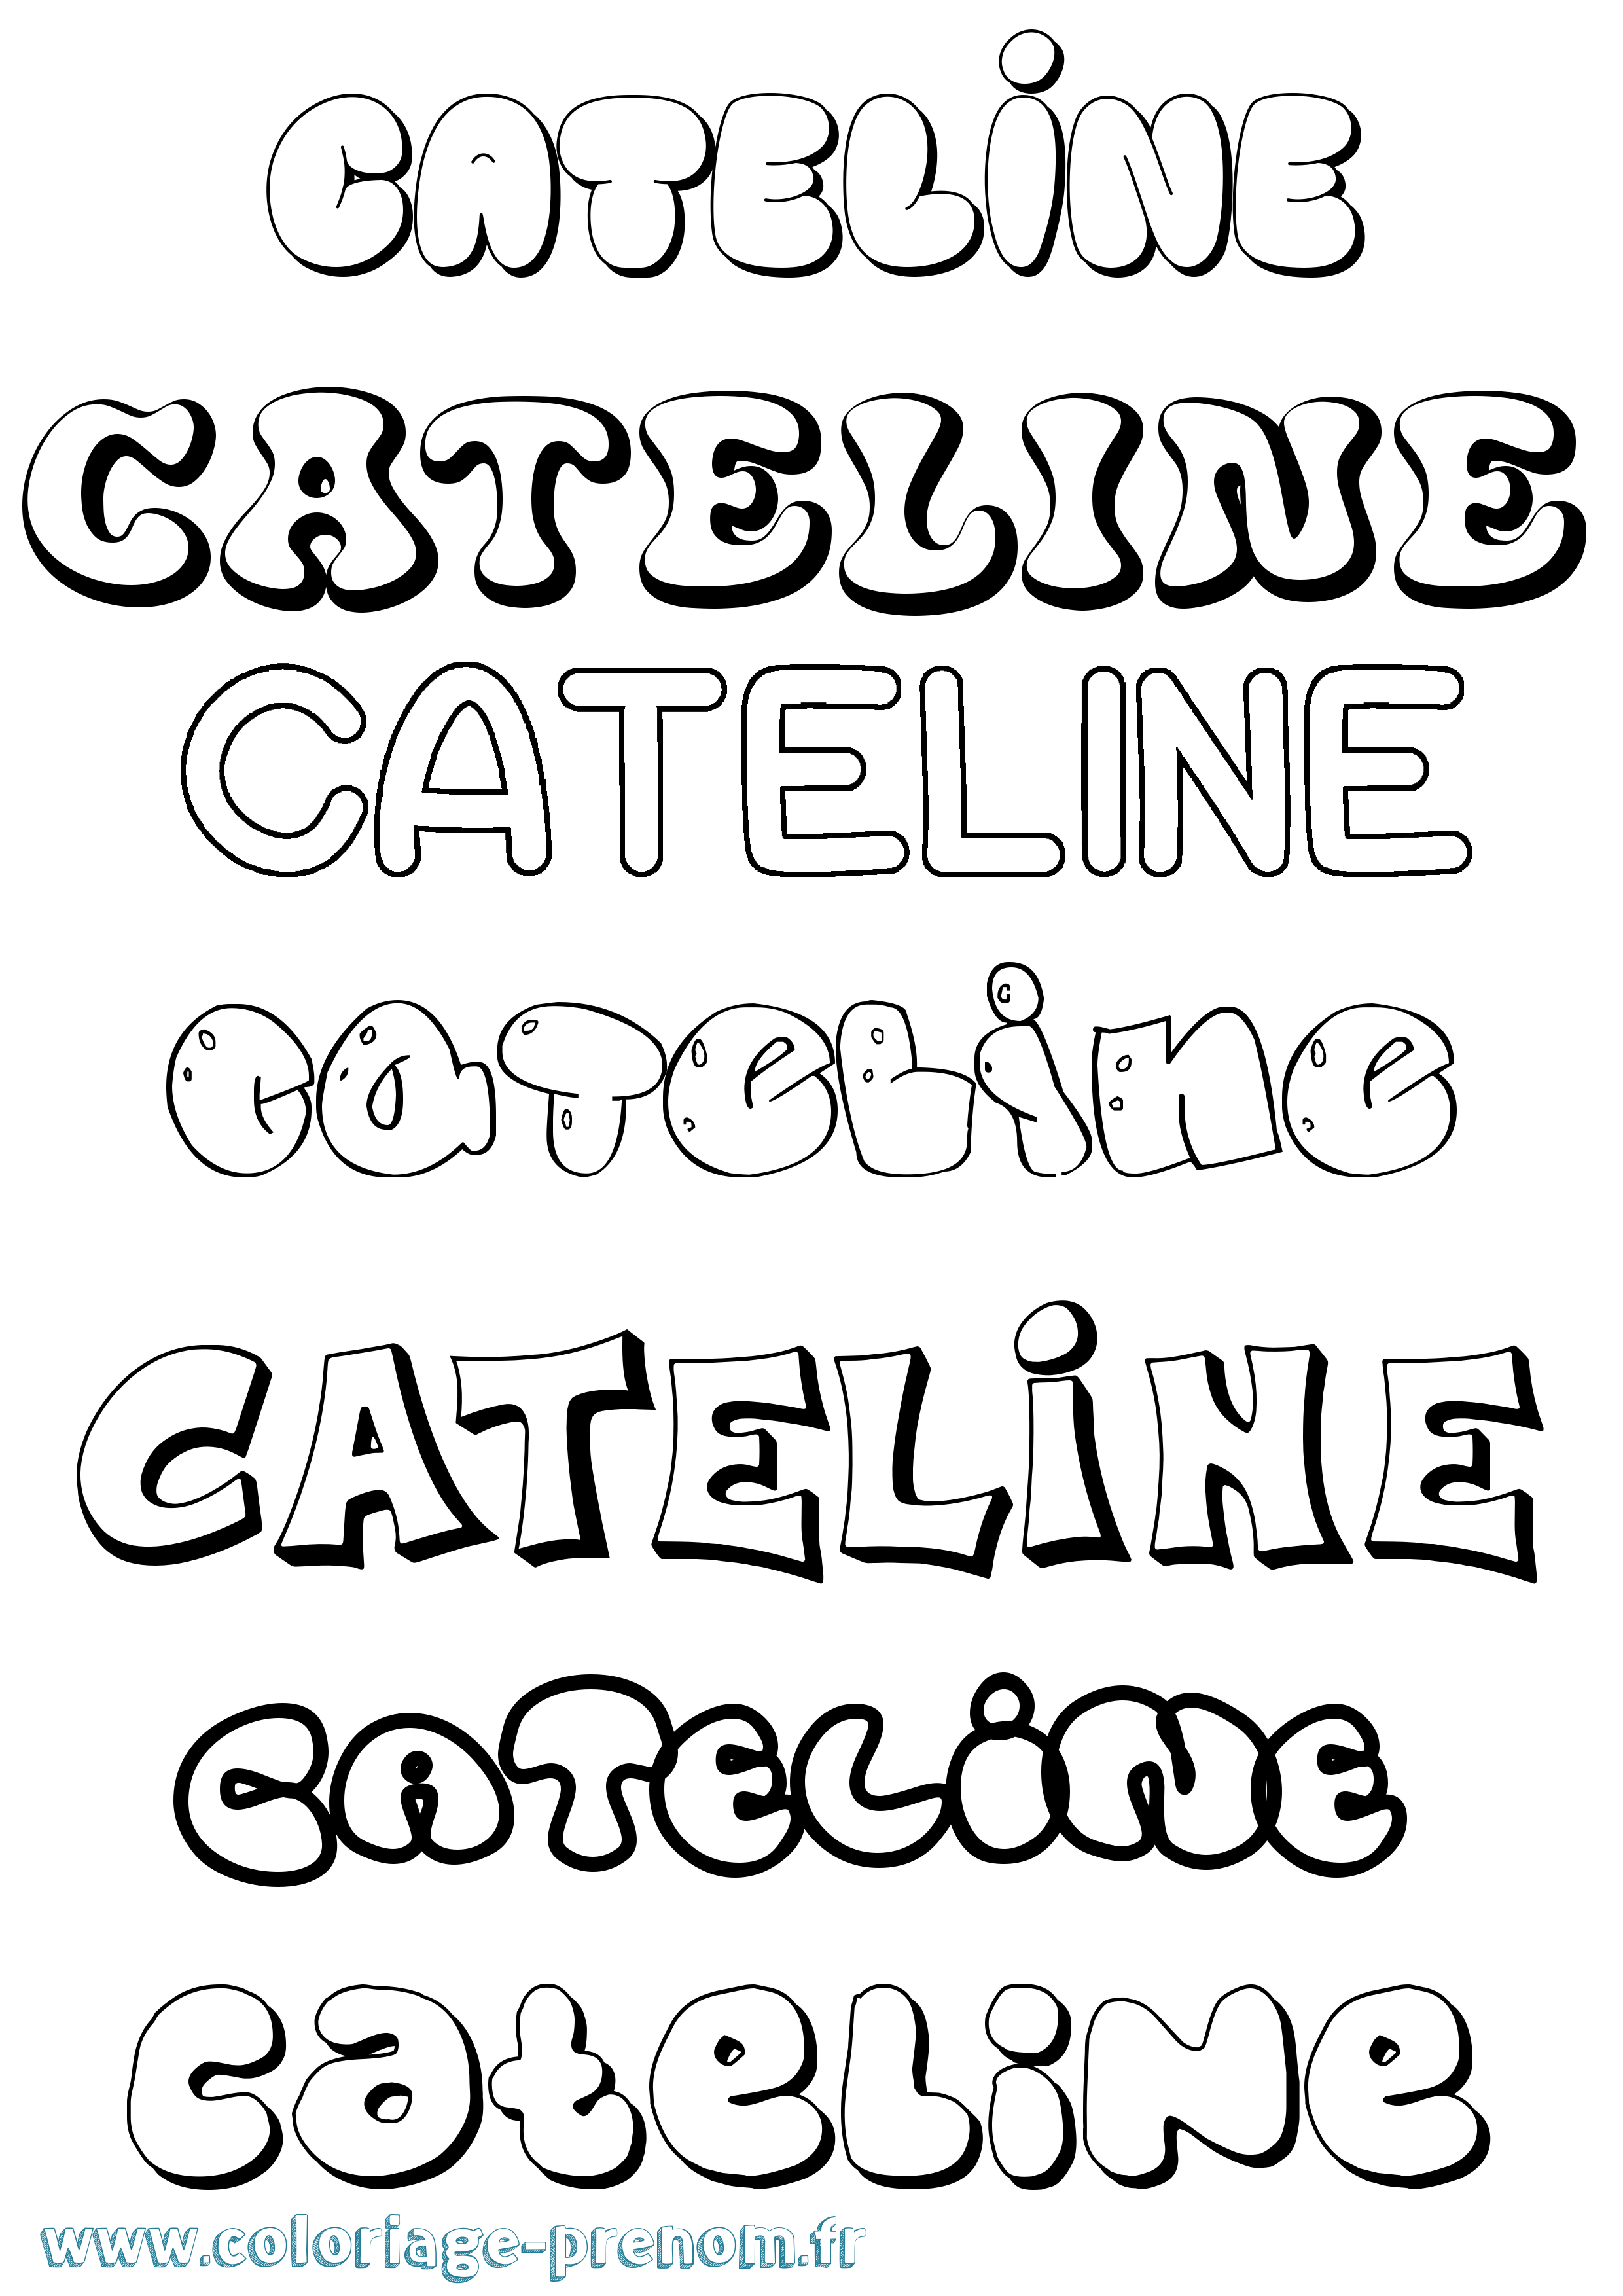 Coloriage prénom Cateline Bubble